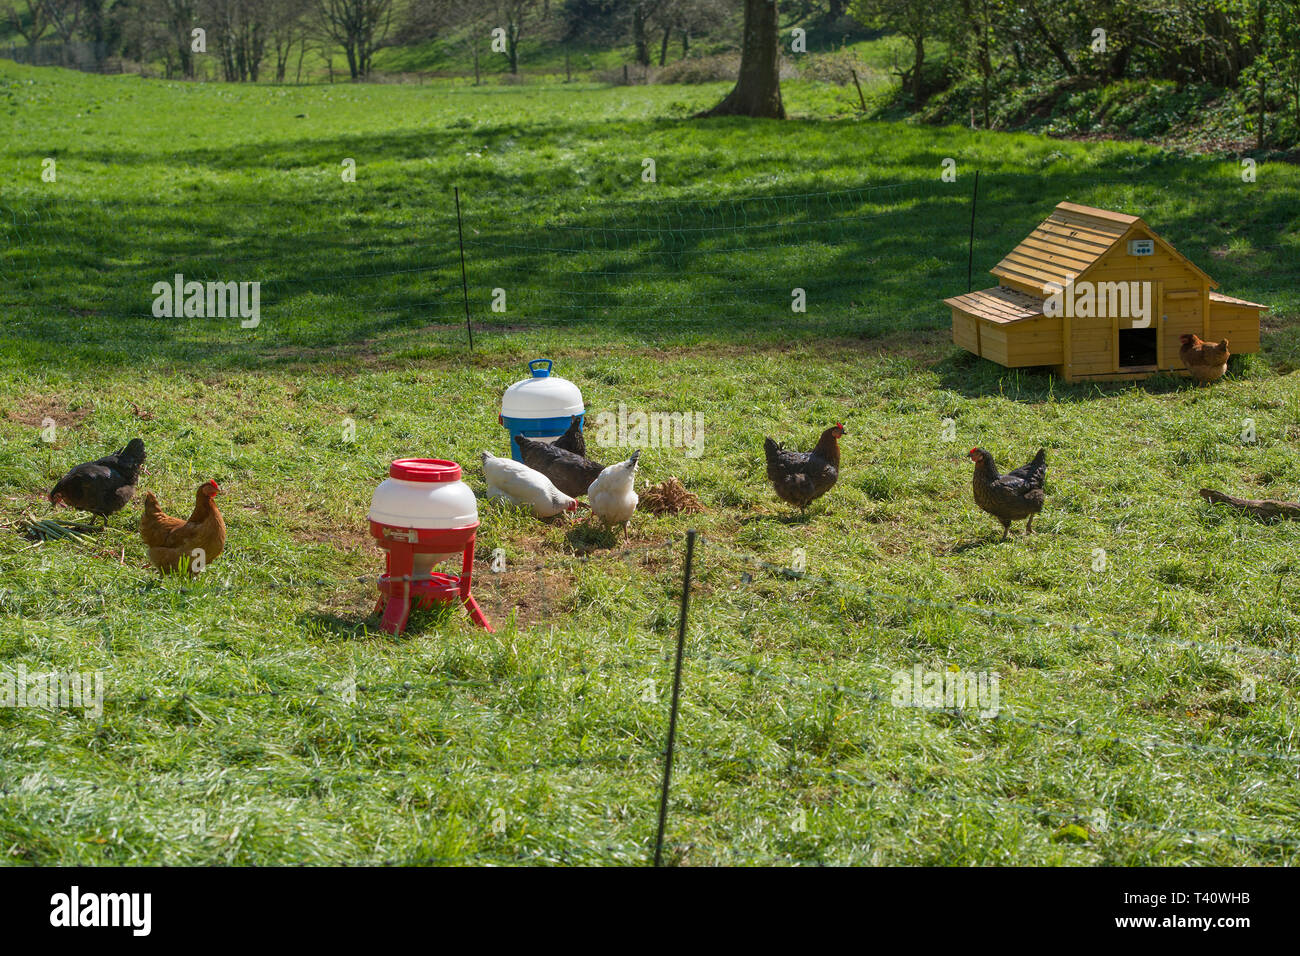 Chicken Run en el jardín Foto de stock